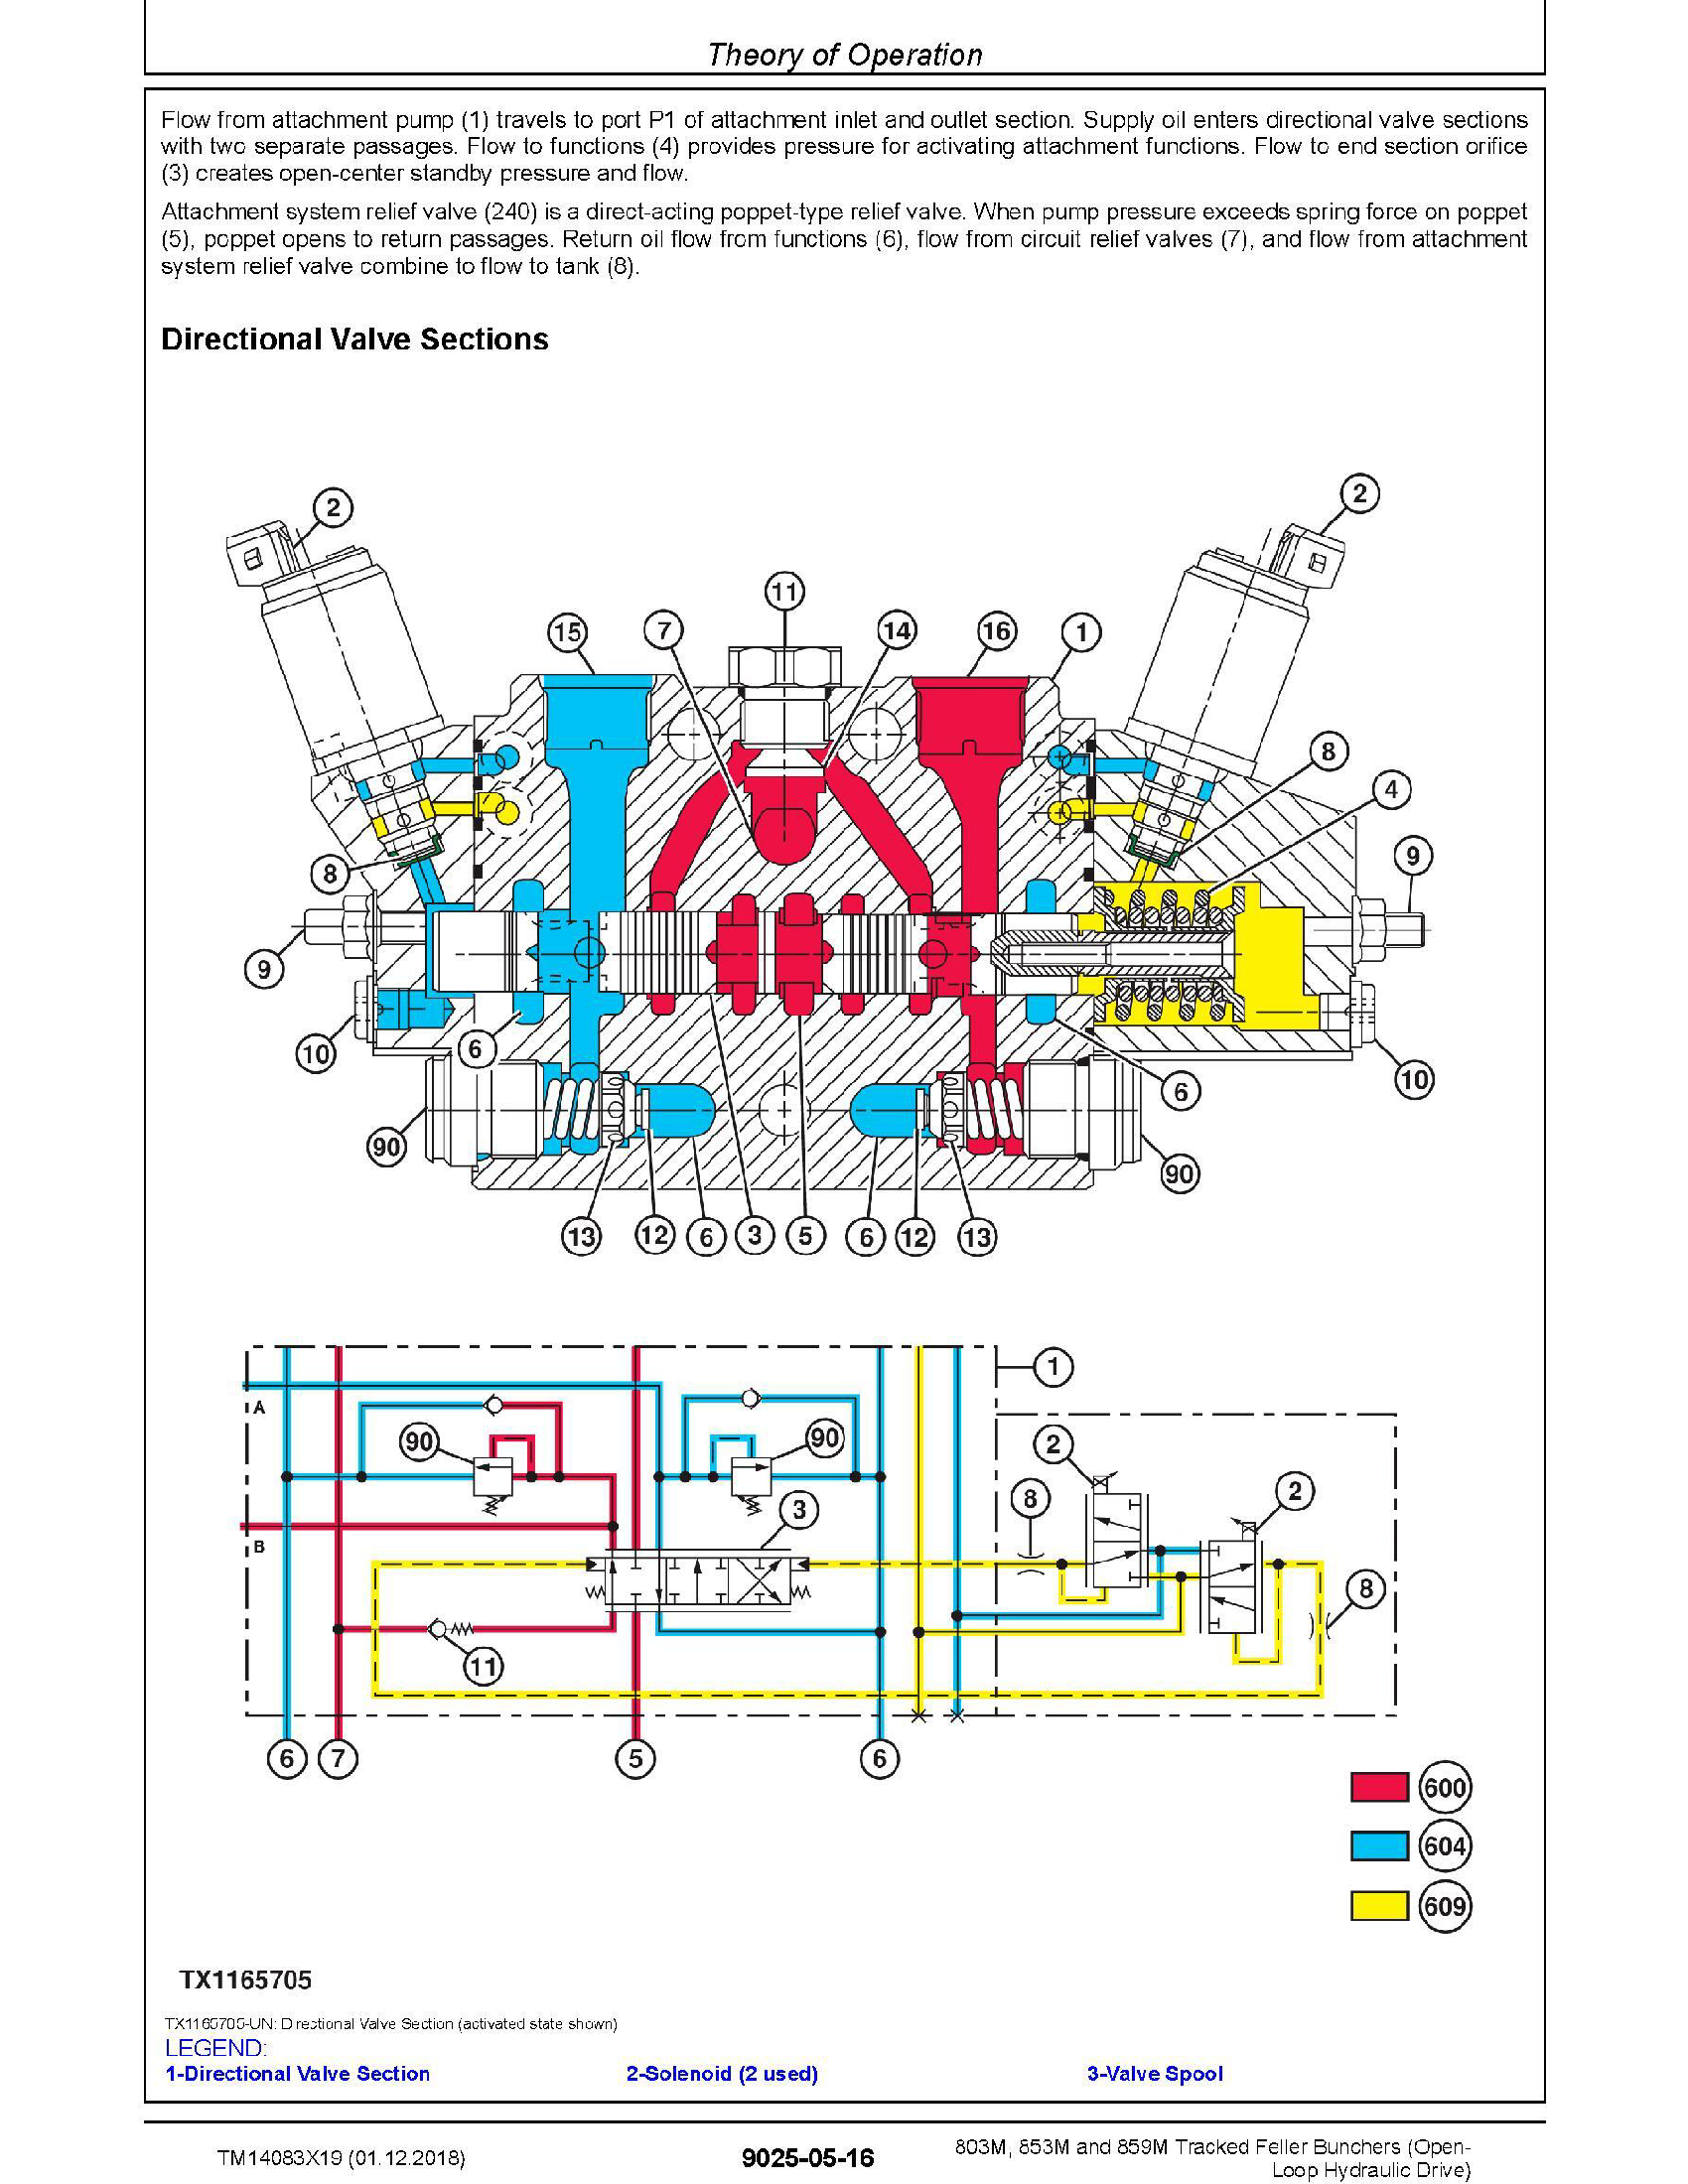 John Deere 848H manual pdf